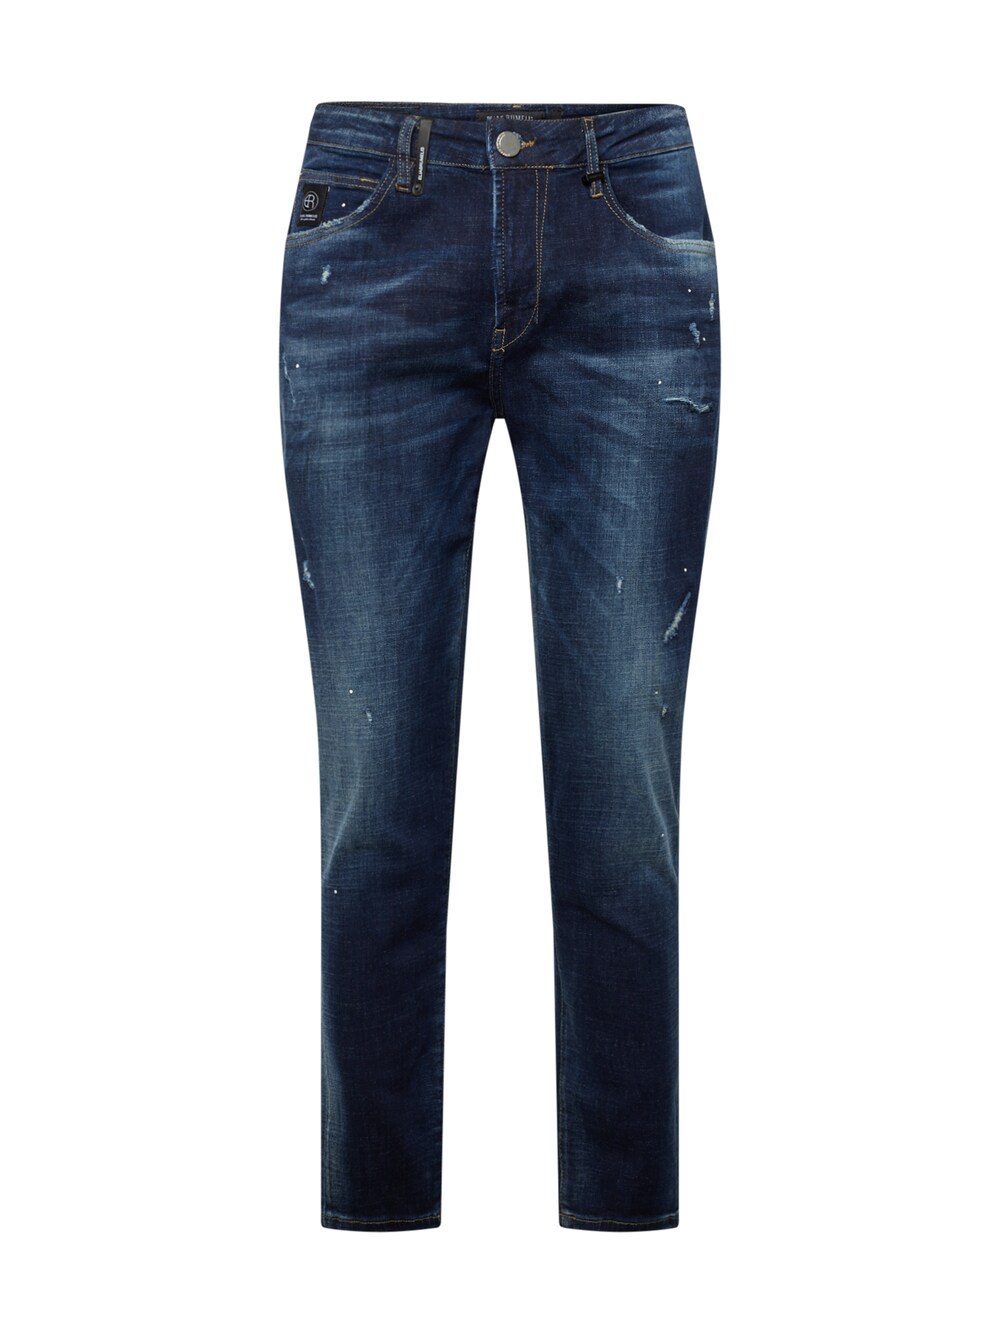 Обычные джинсы Elias Rumelis Felice Laser, темно-синий обычные джинсы elias rumelis dave темно синий